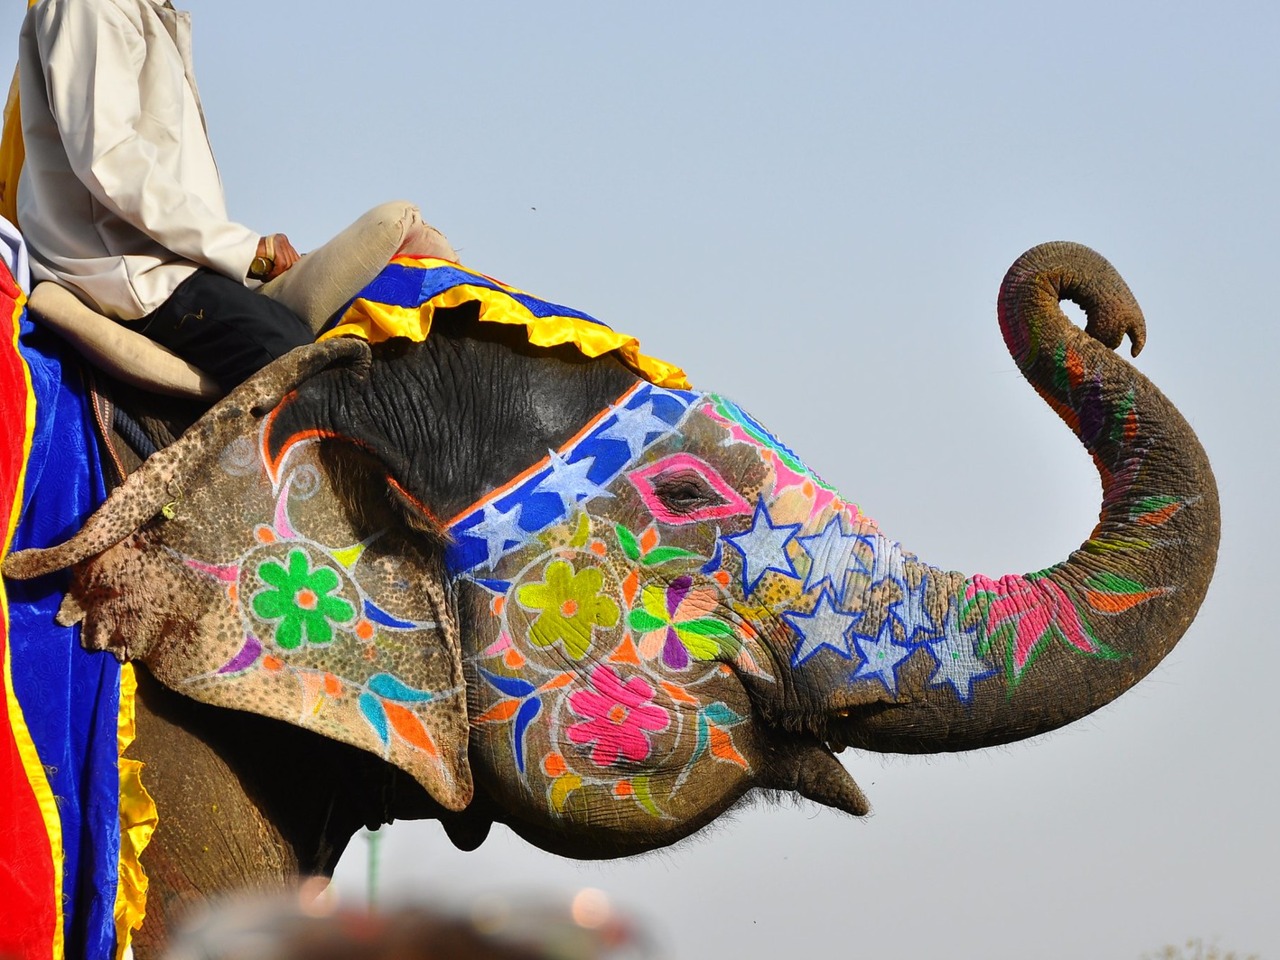 Арт-Индия: тур с рисованием на слонах и вышивкой | Цена 1359$, отзывы, описание экскурсии